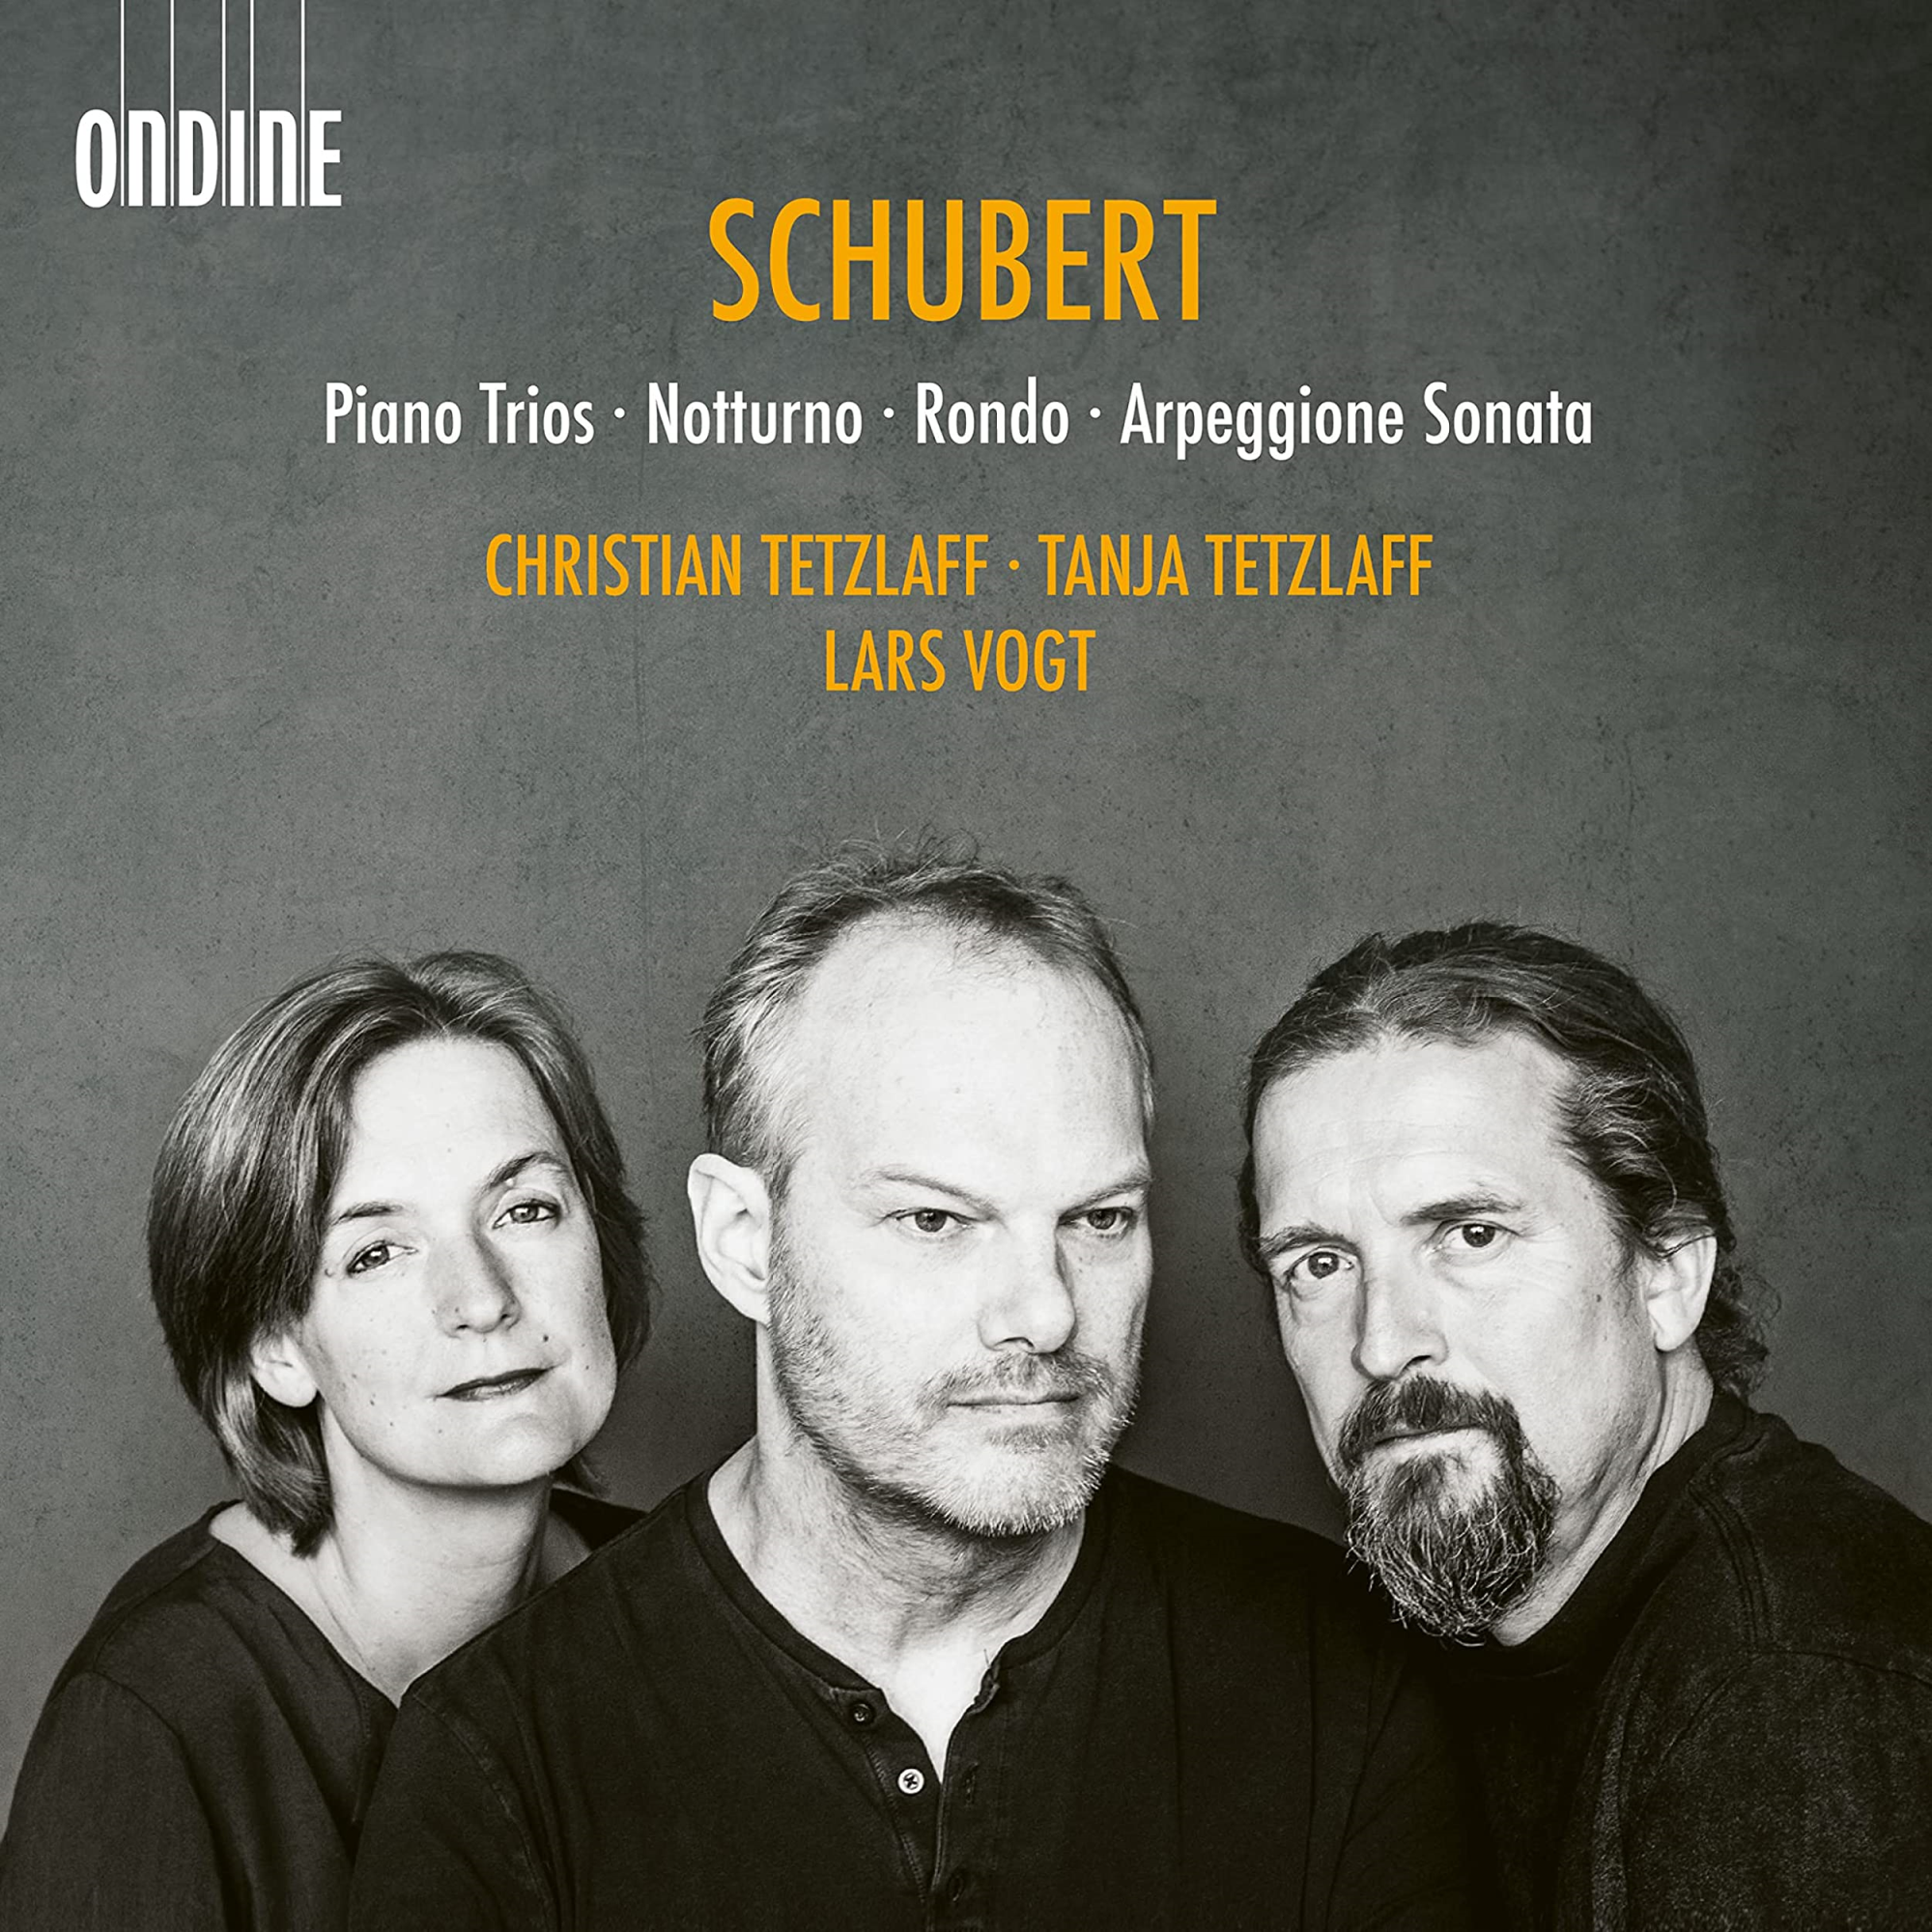 Audio Cd Franz Schubert - Piano Trios Notturno Rondo Arpeggione Sonata 2 Cd NUOVO SIGILLATO EDIZIONE DEL SUBITO DISPONIBILE